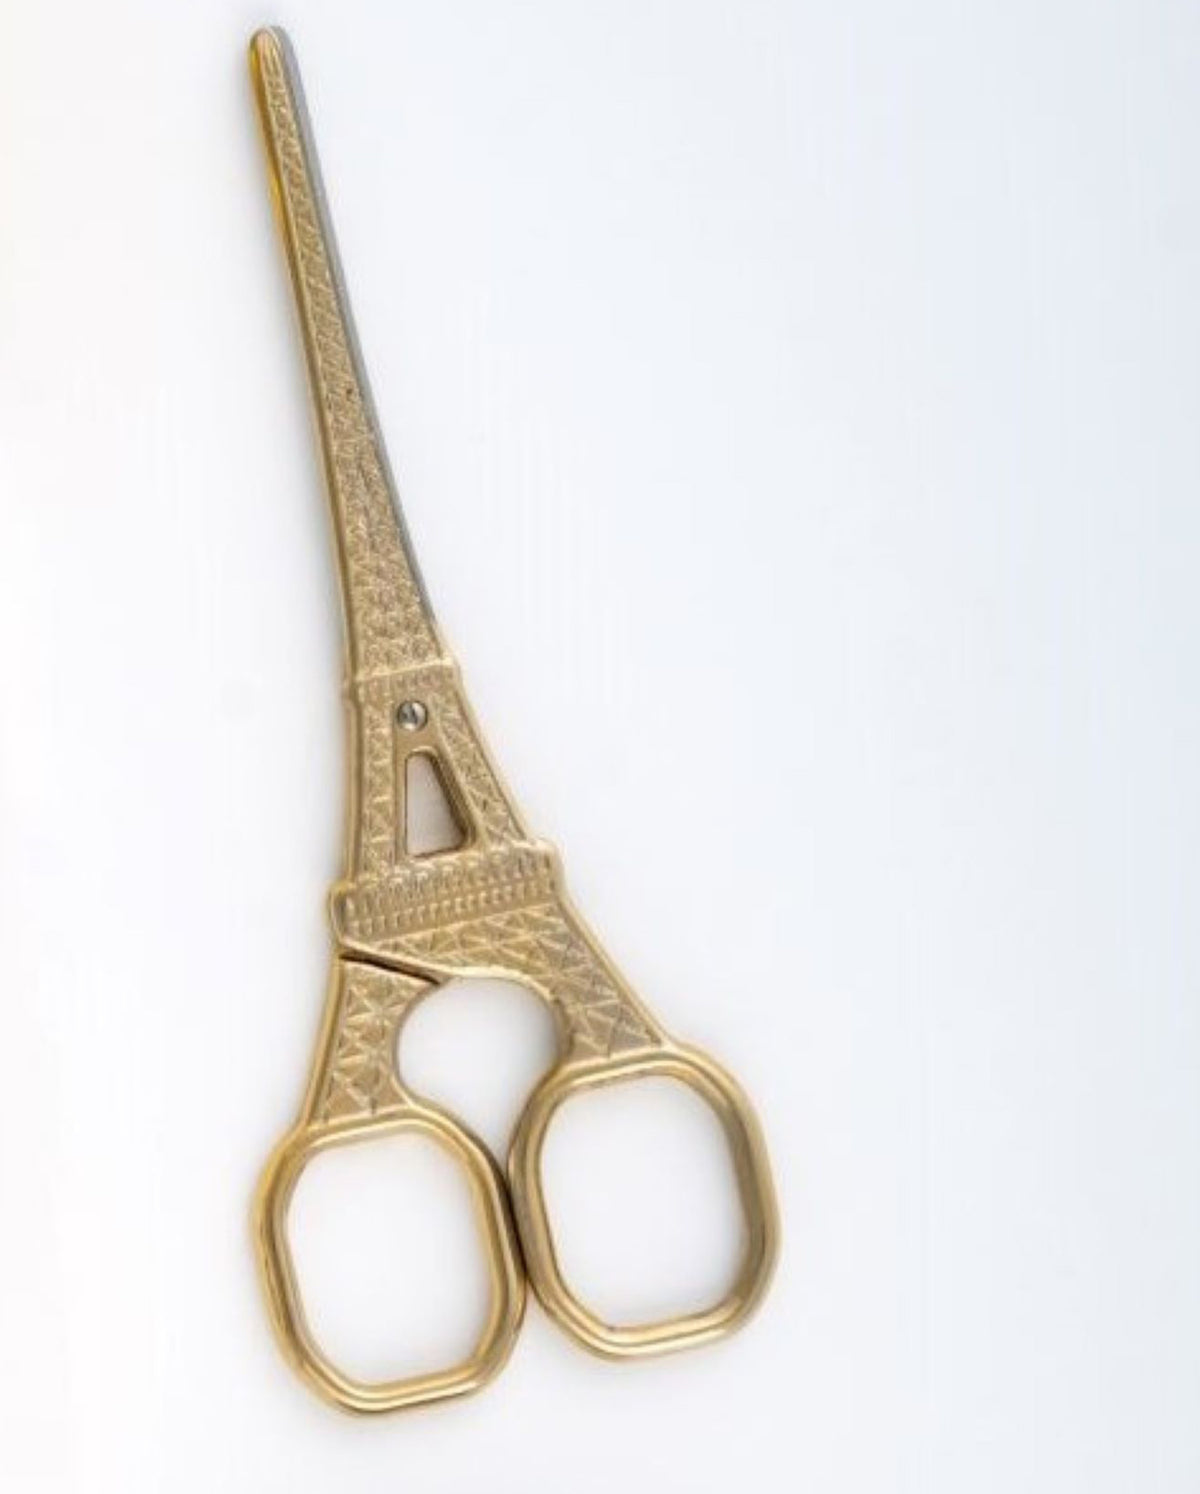 Rogue Paq Eiffel Tower Bud Trimming Scissors